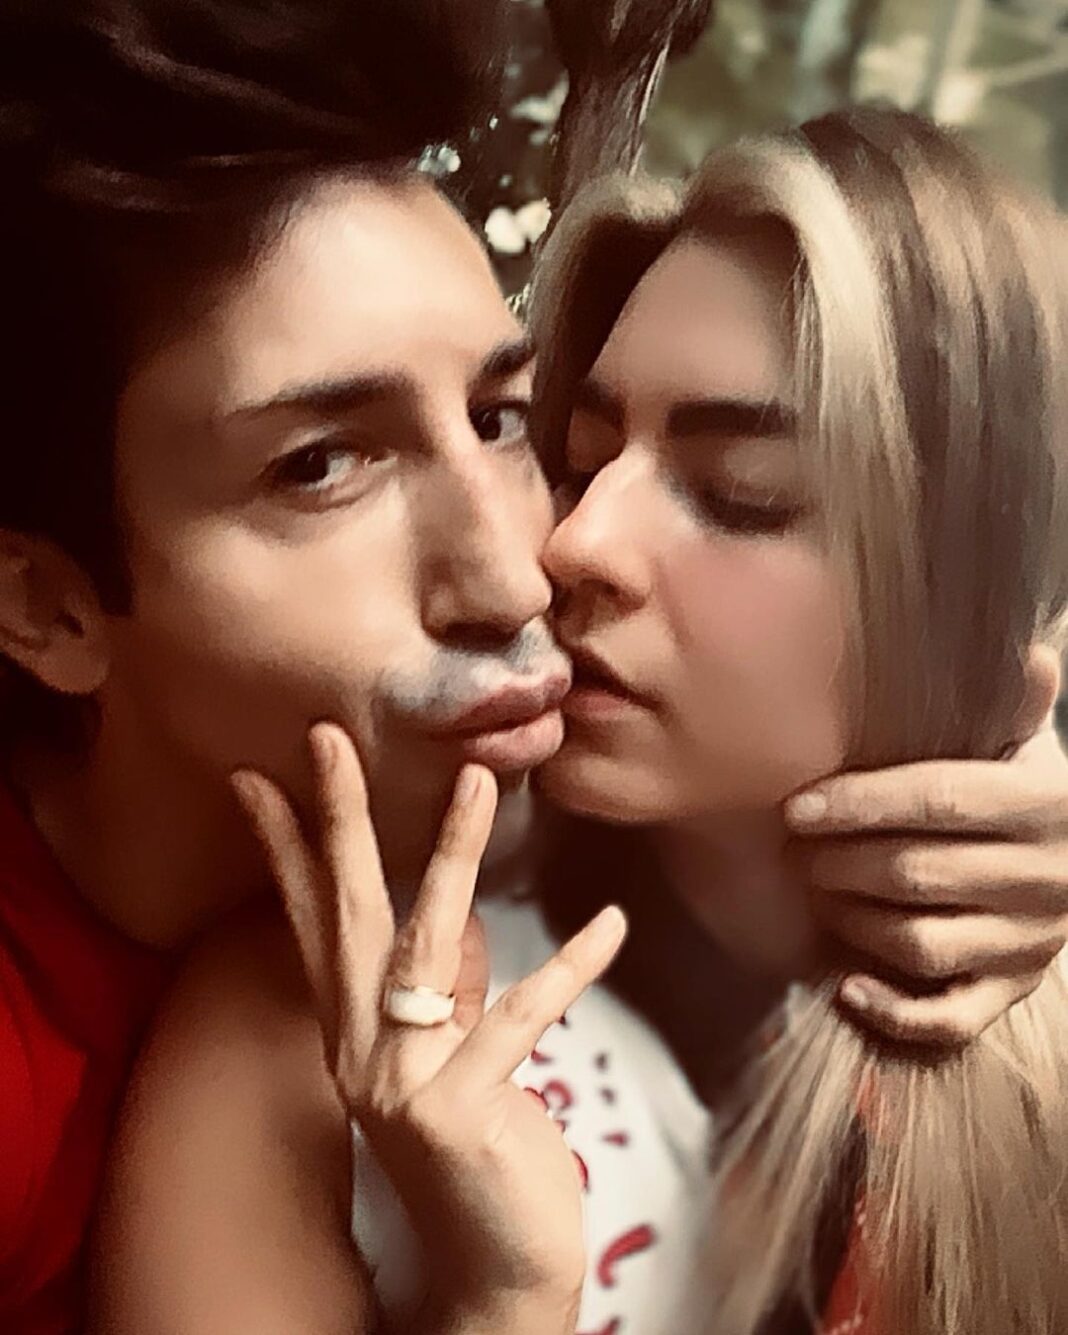 Κωνσταντίνος Εμμανουήλ: Ξανά μαζί με τη σύντροφό του Νάνσυ, 4 μέρες μετά τον χωρισμό τους - Τα καυτά φιλιά στο Instagram